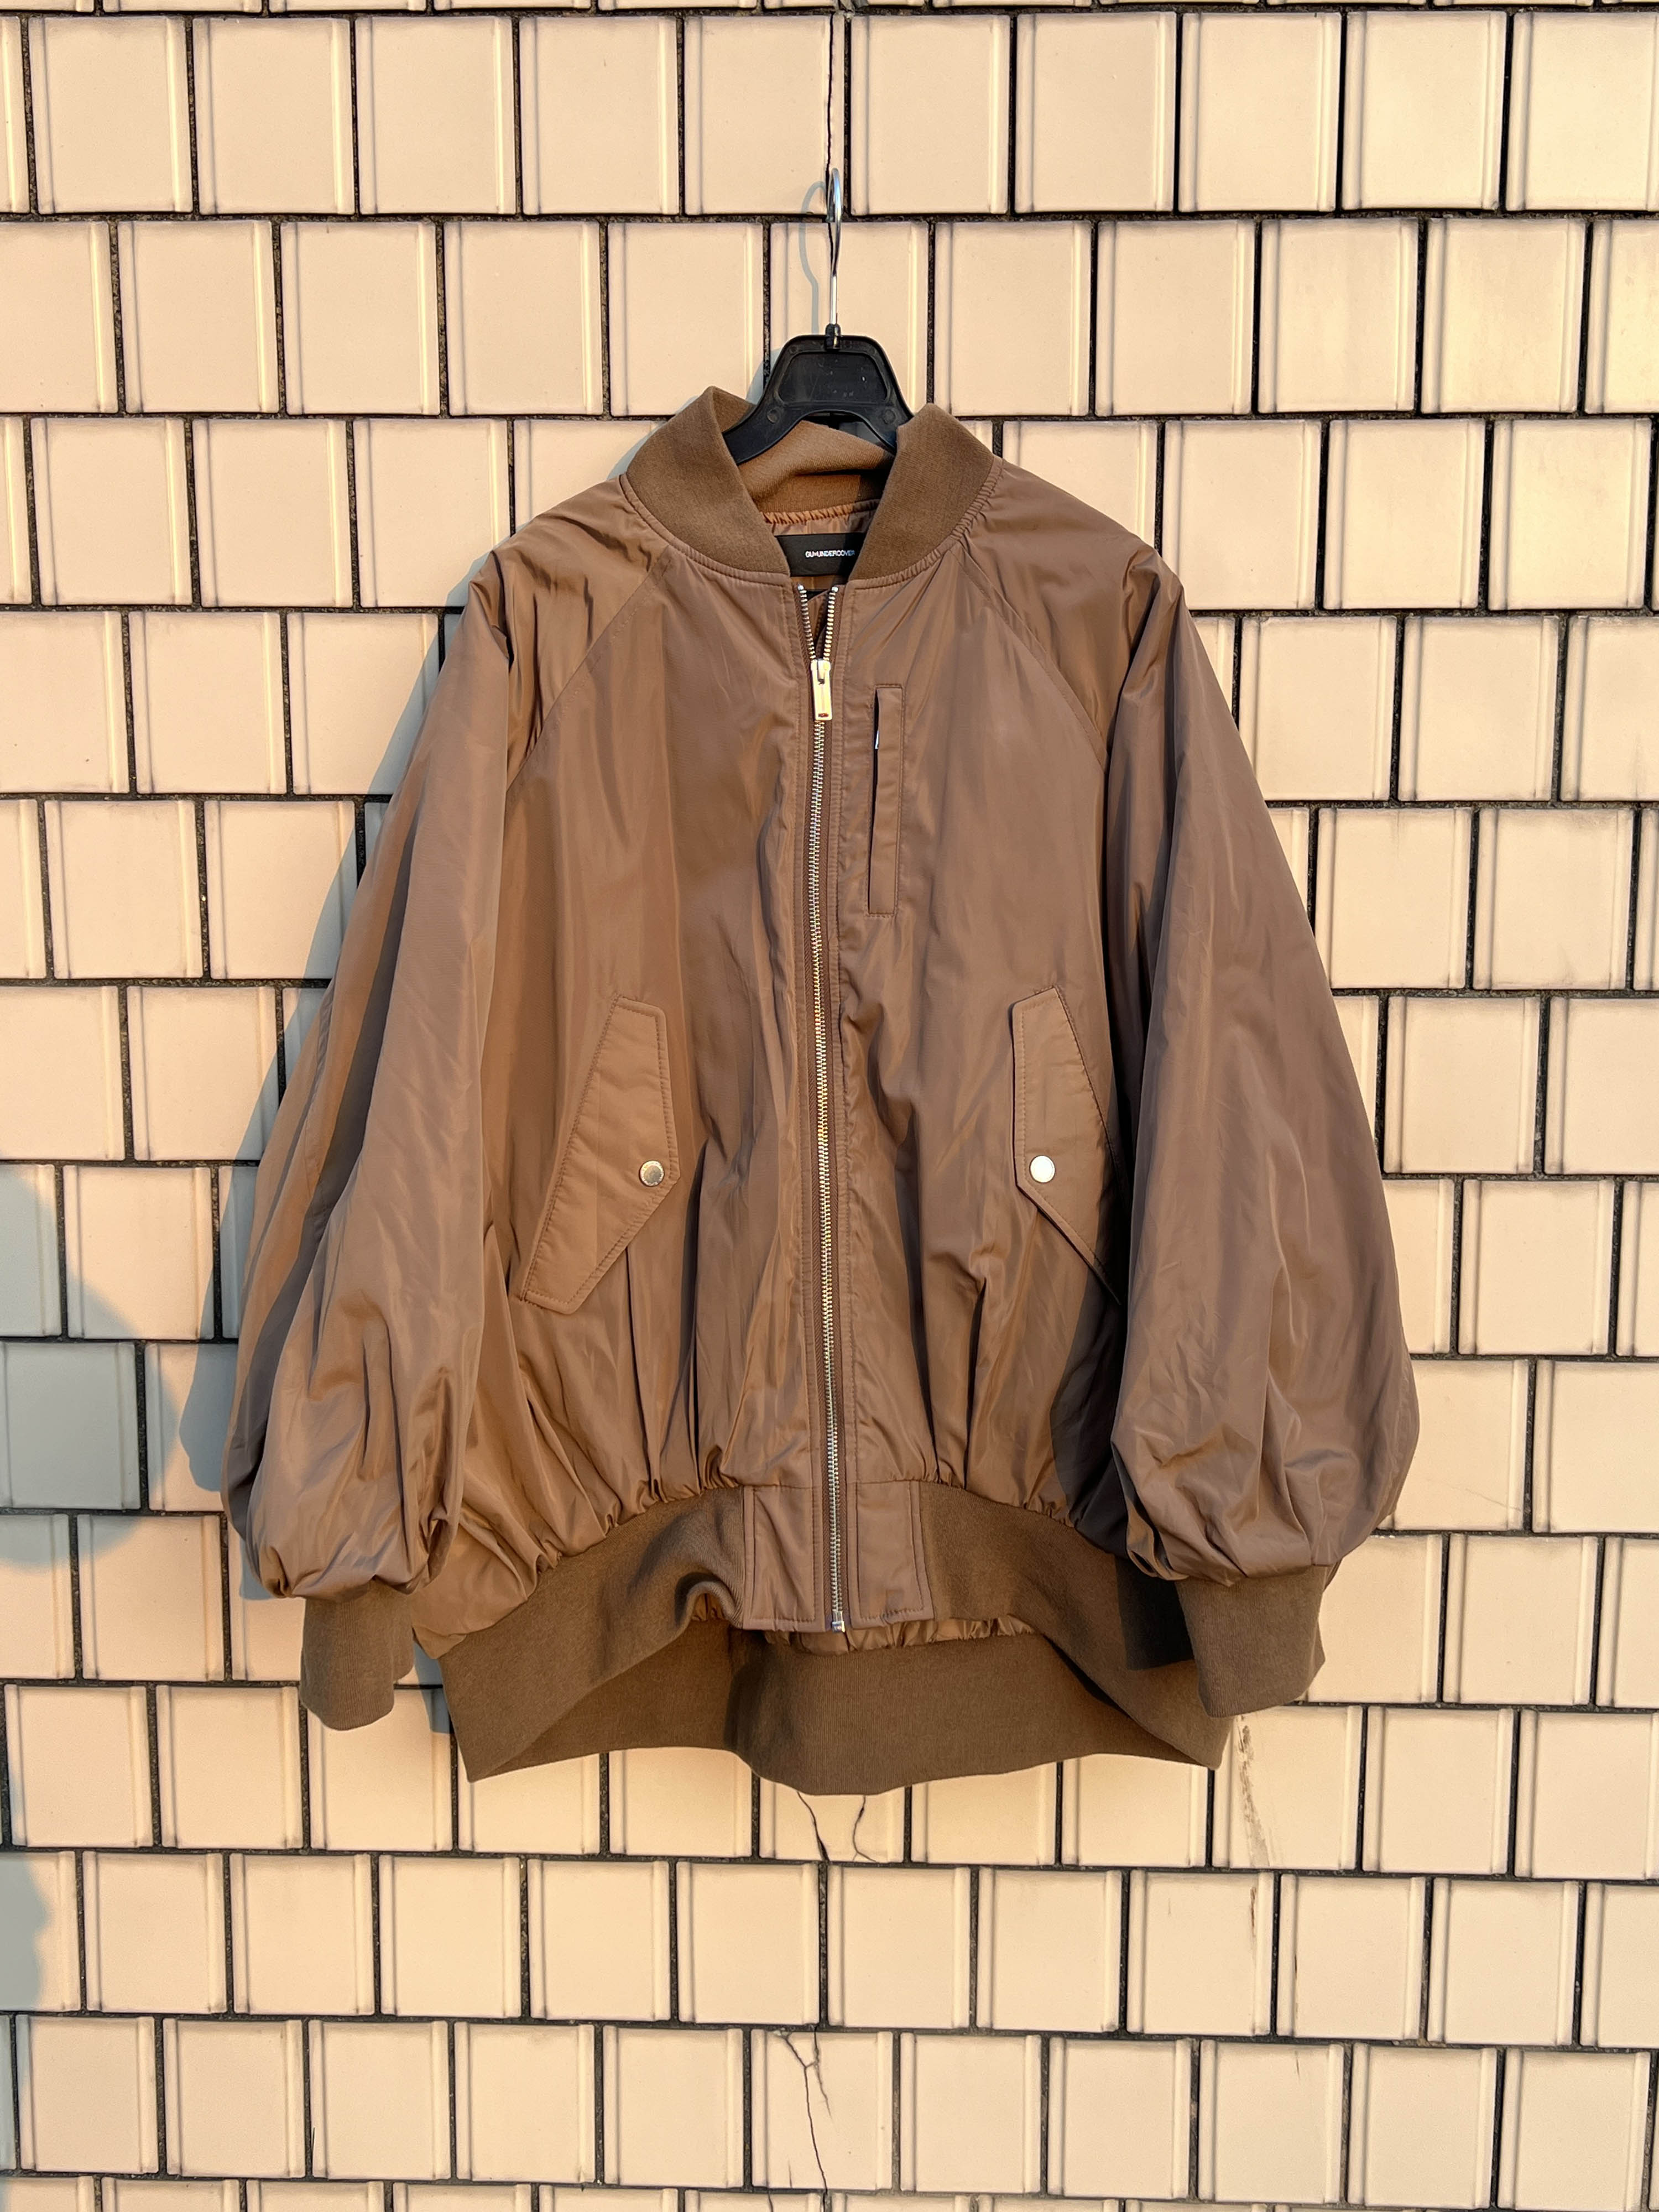 GU X UNDERCOVER ma-1 jacket